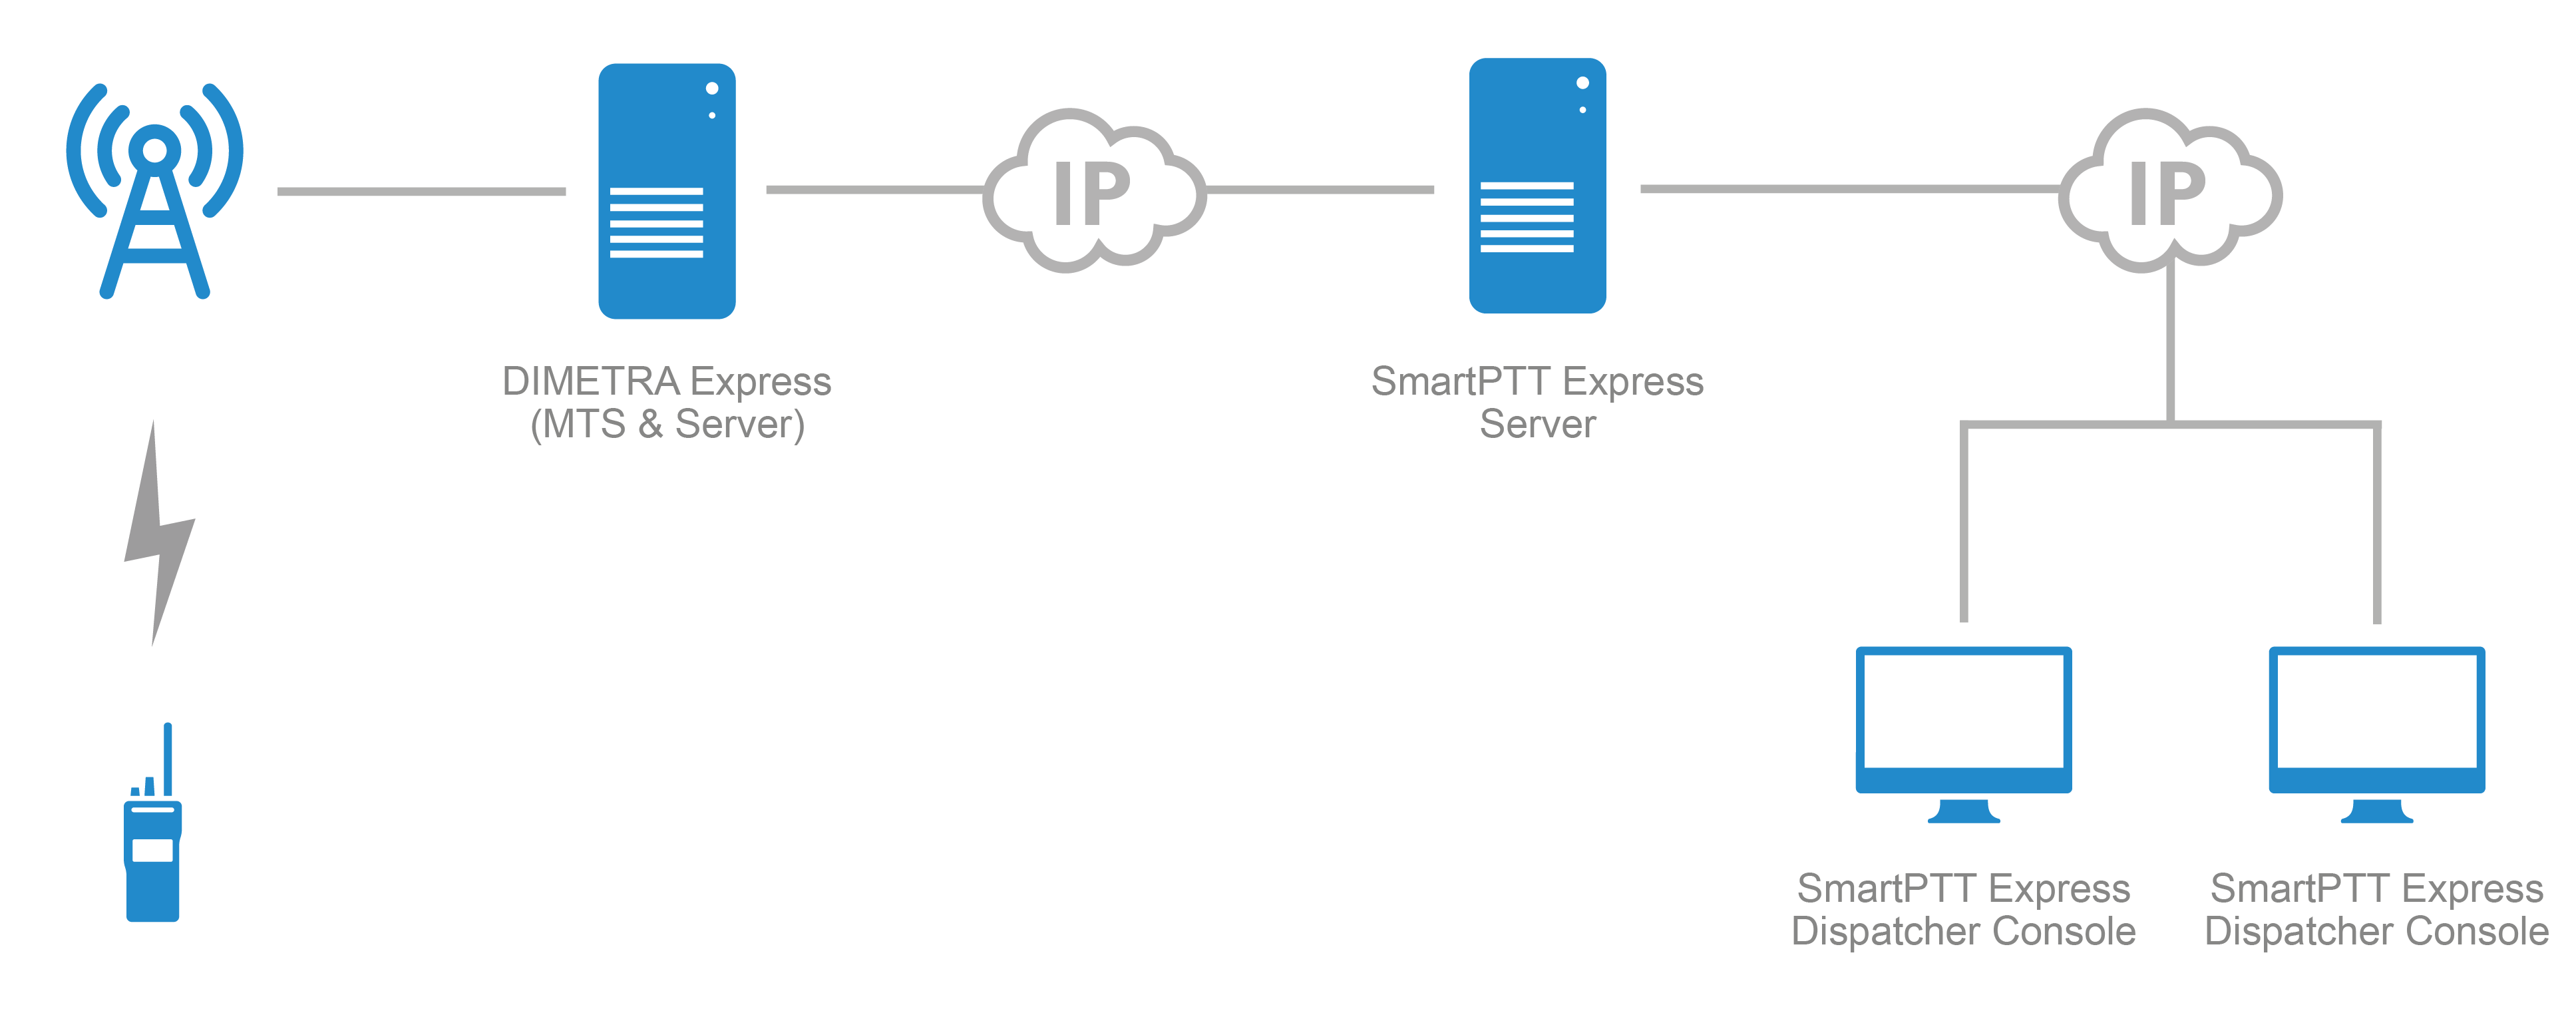 Arquitetura do Sistema DIMETRA & SmartPTT Express